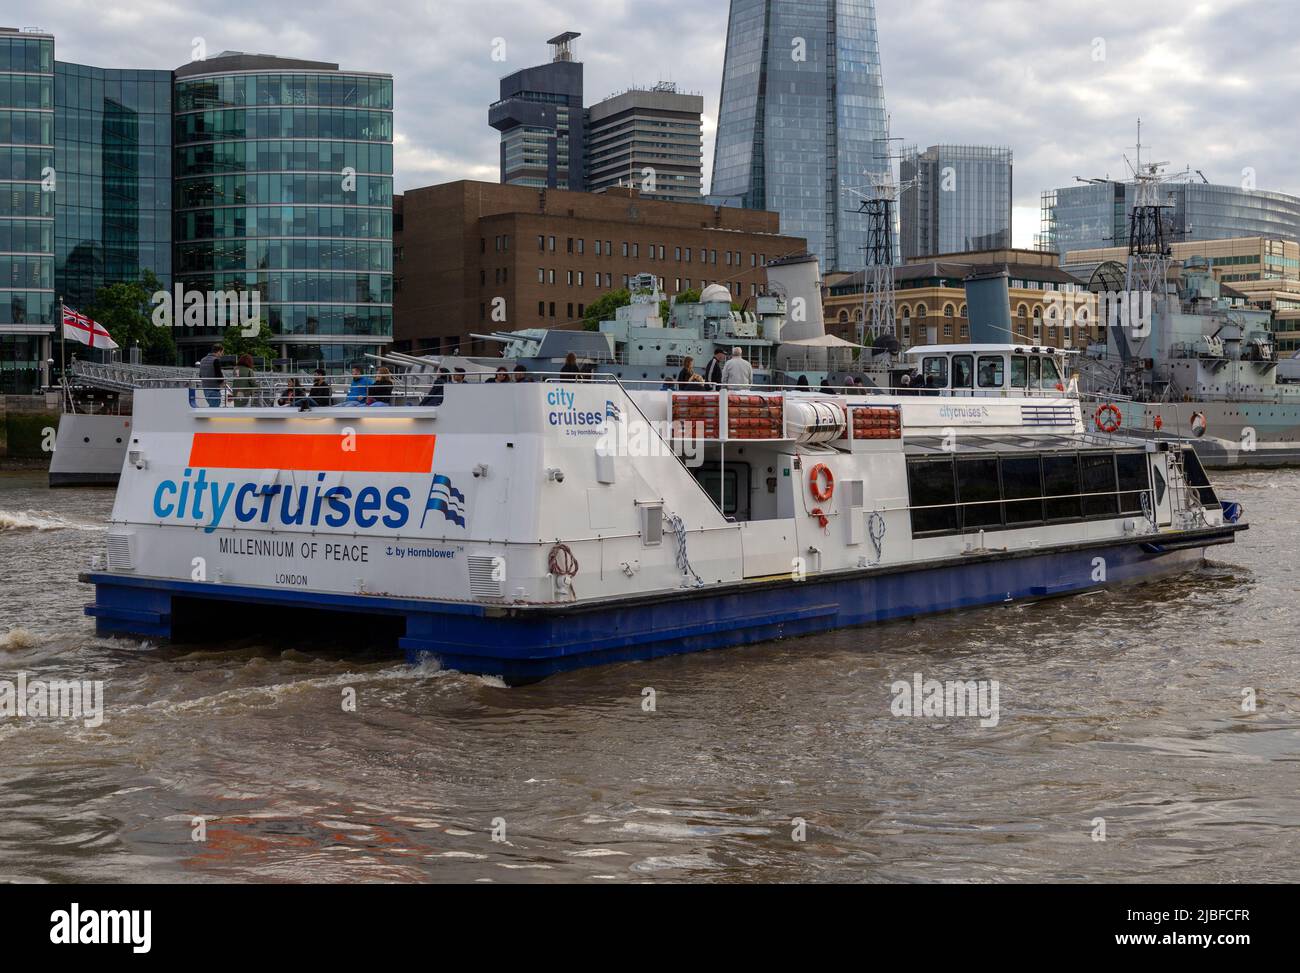 Excursion en bateau sur la Tamise, City Cruises by Hornblower, Londres, Angleterre, Royaume-Uni Banque D'Images